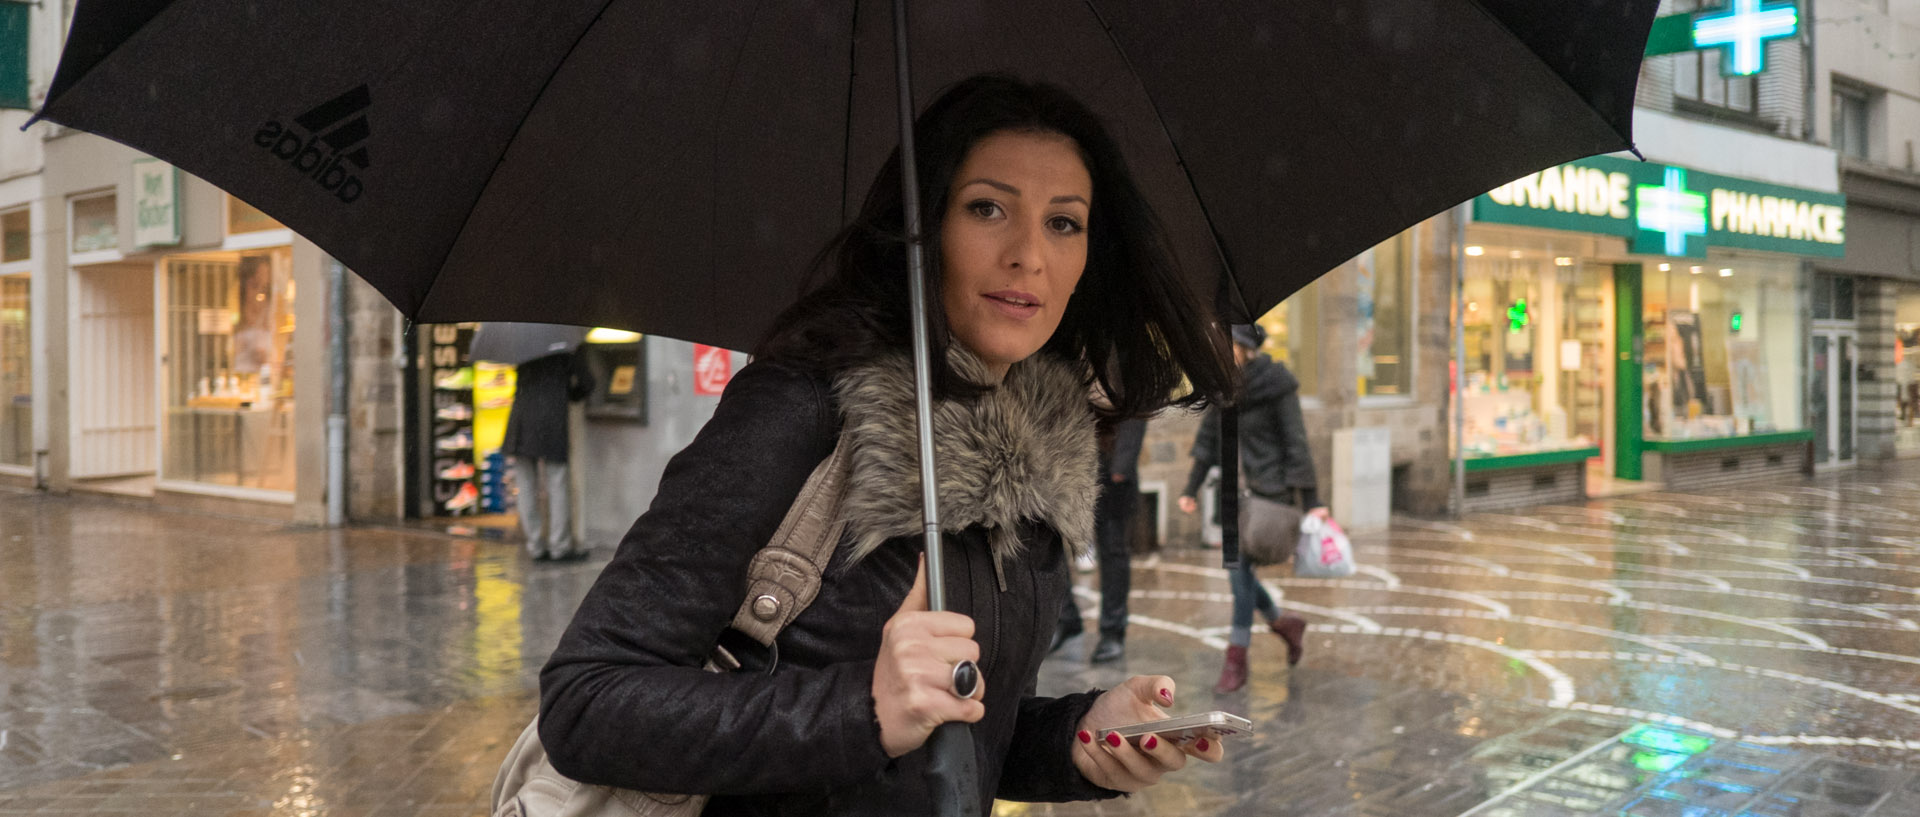 Jeune femme avec un parapluie, rue des Tanneurs, à Lille.